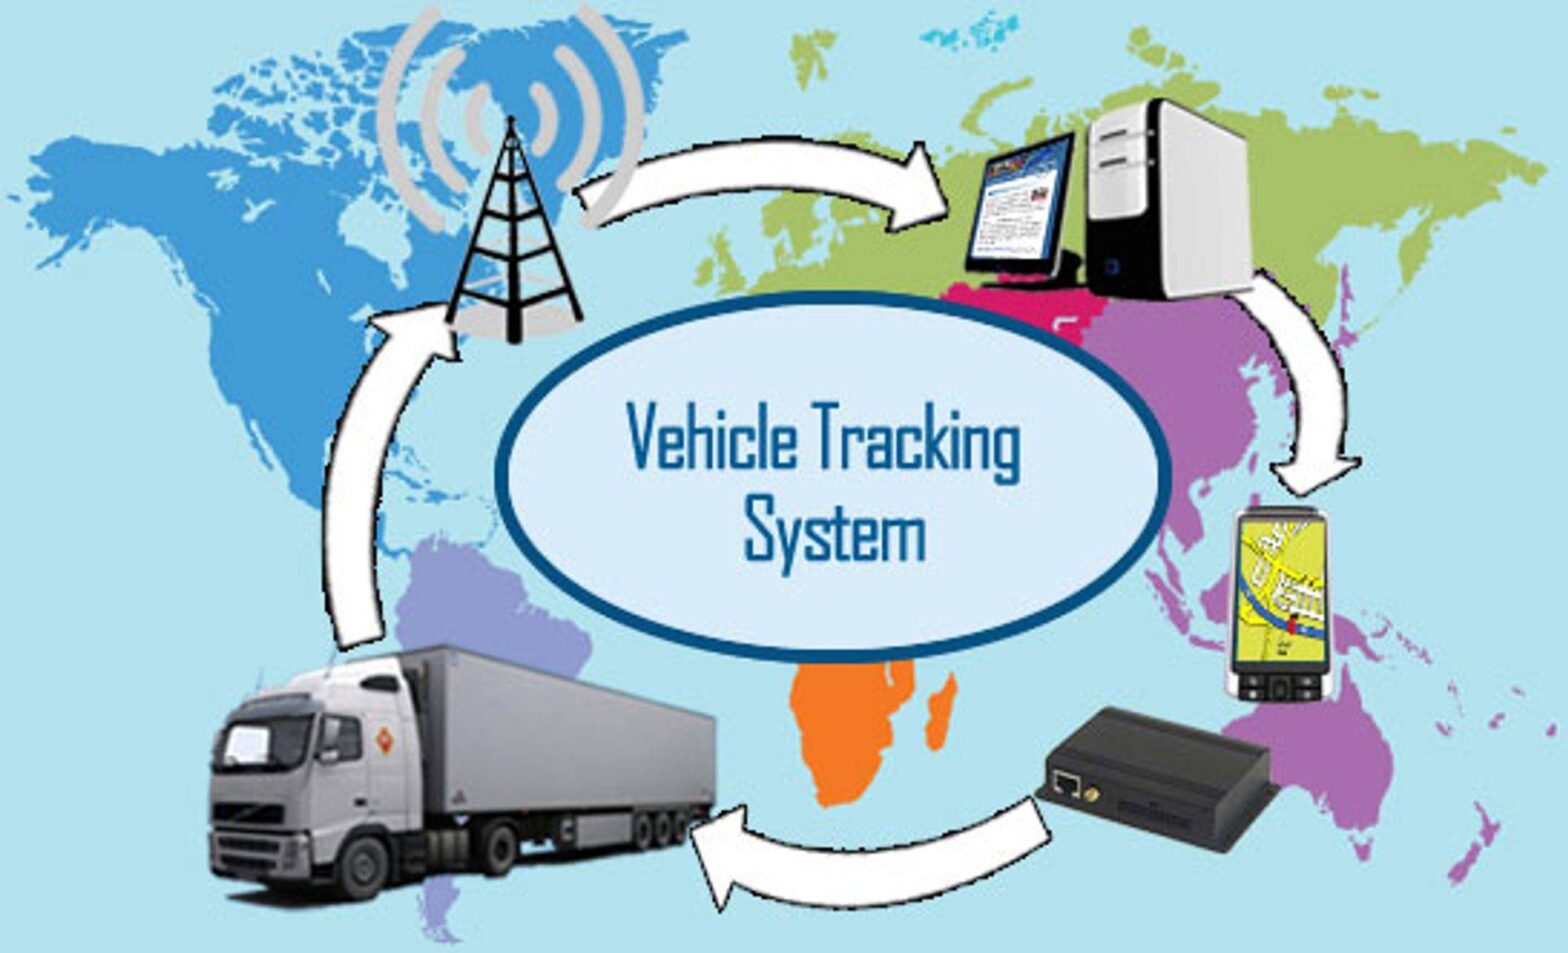 Vehicle Tracking System Market